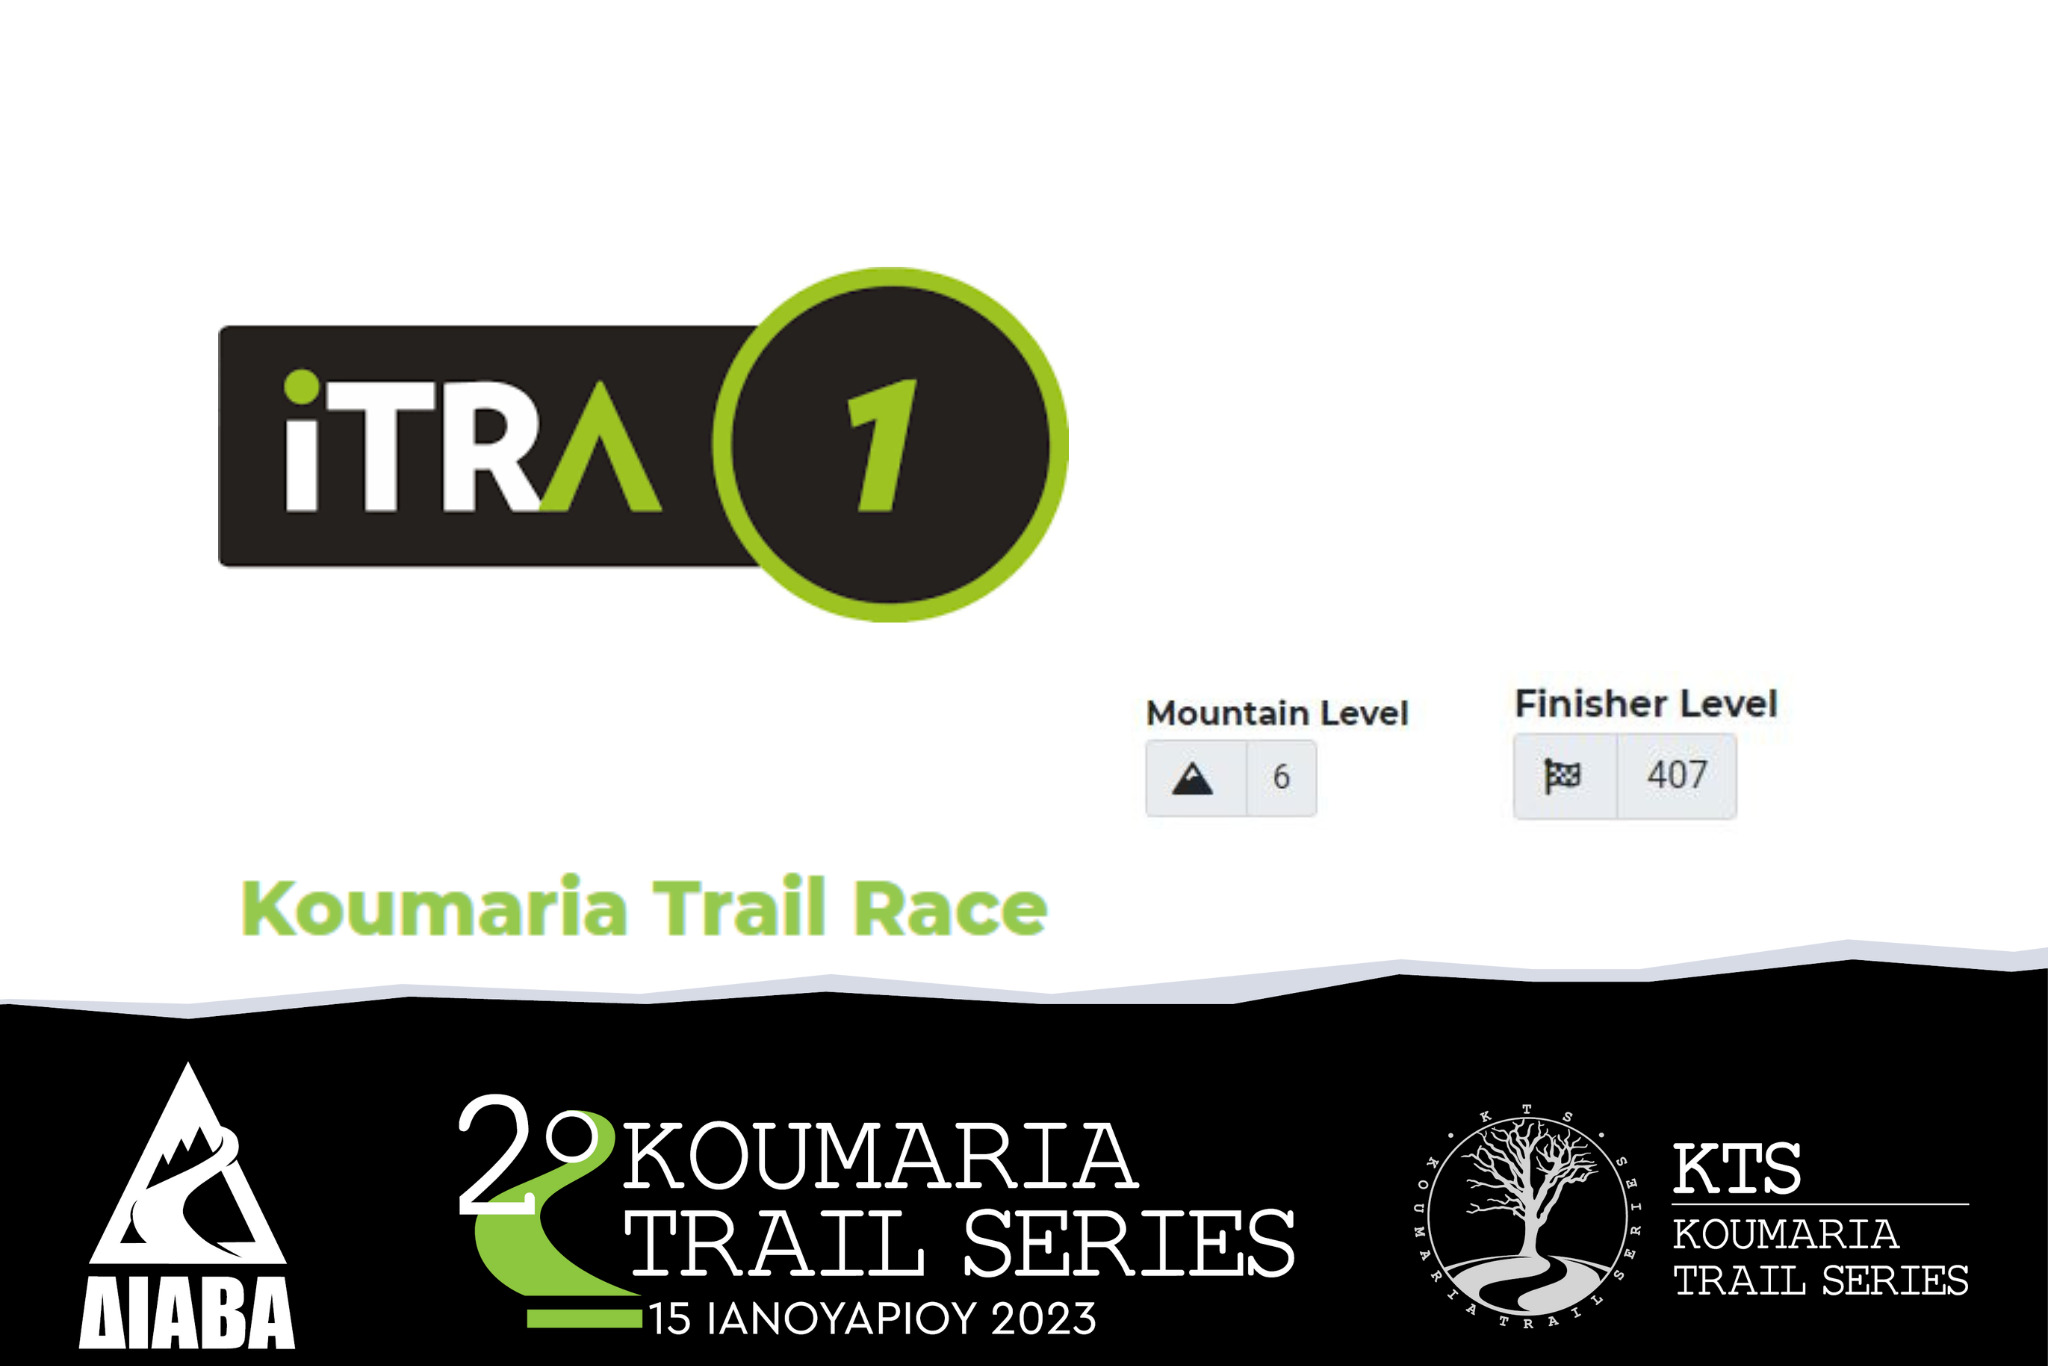 Koumaria Trail Series 2023 – Koumaria Trail Race 21 Km